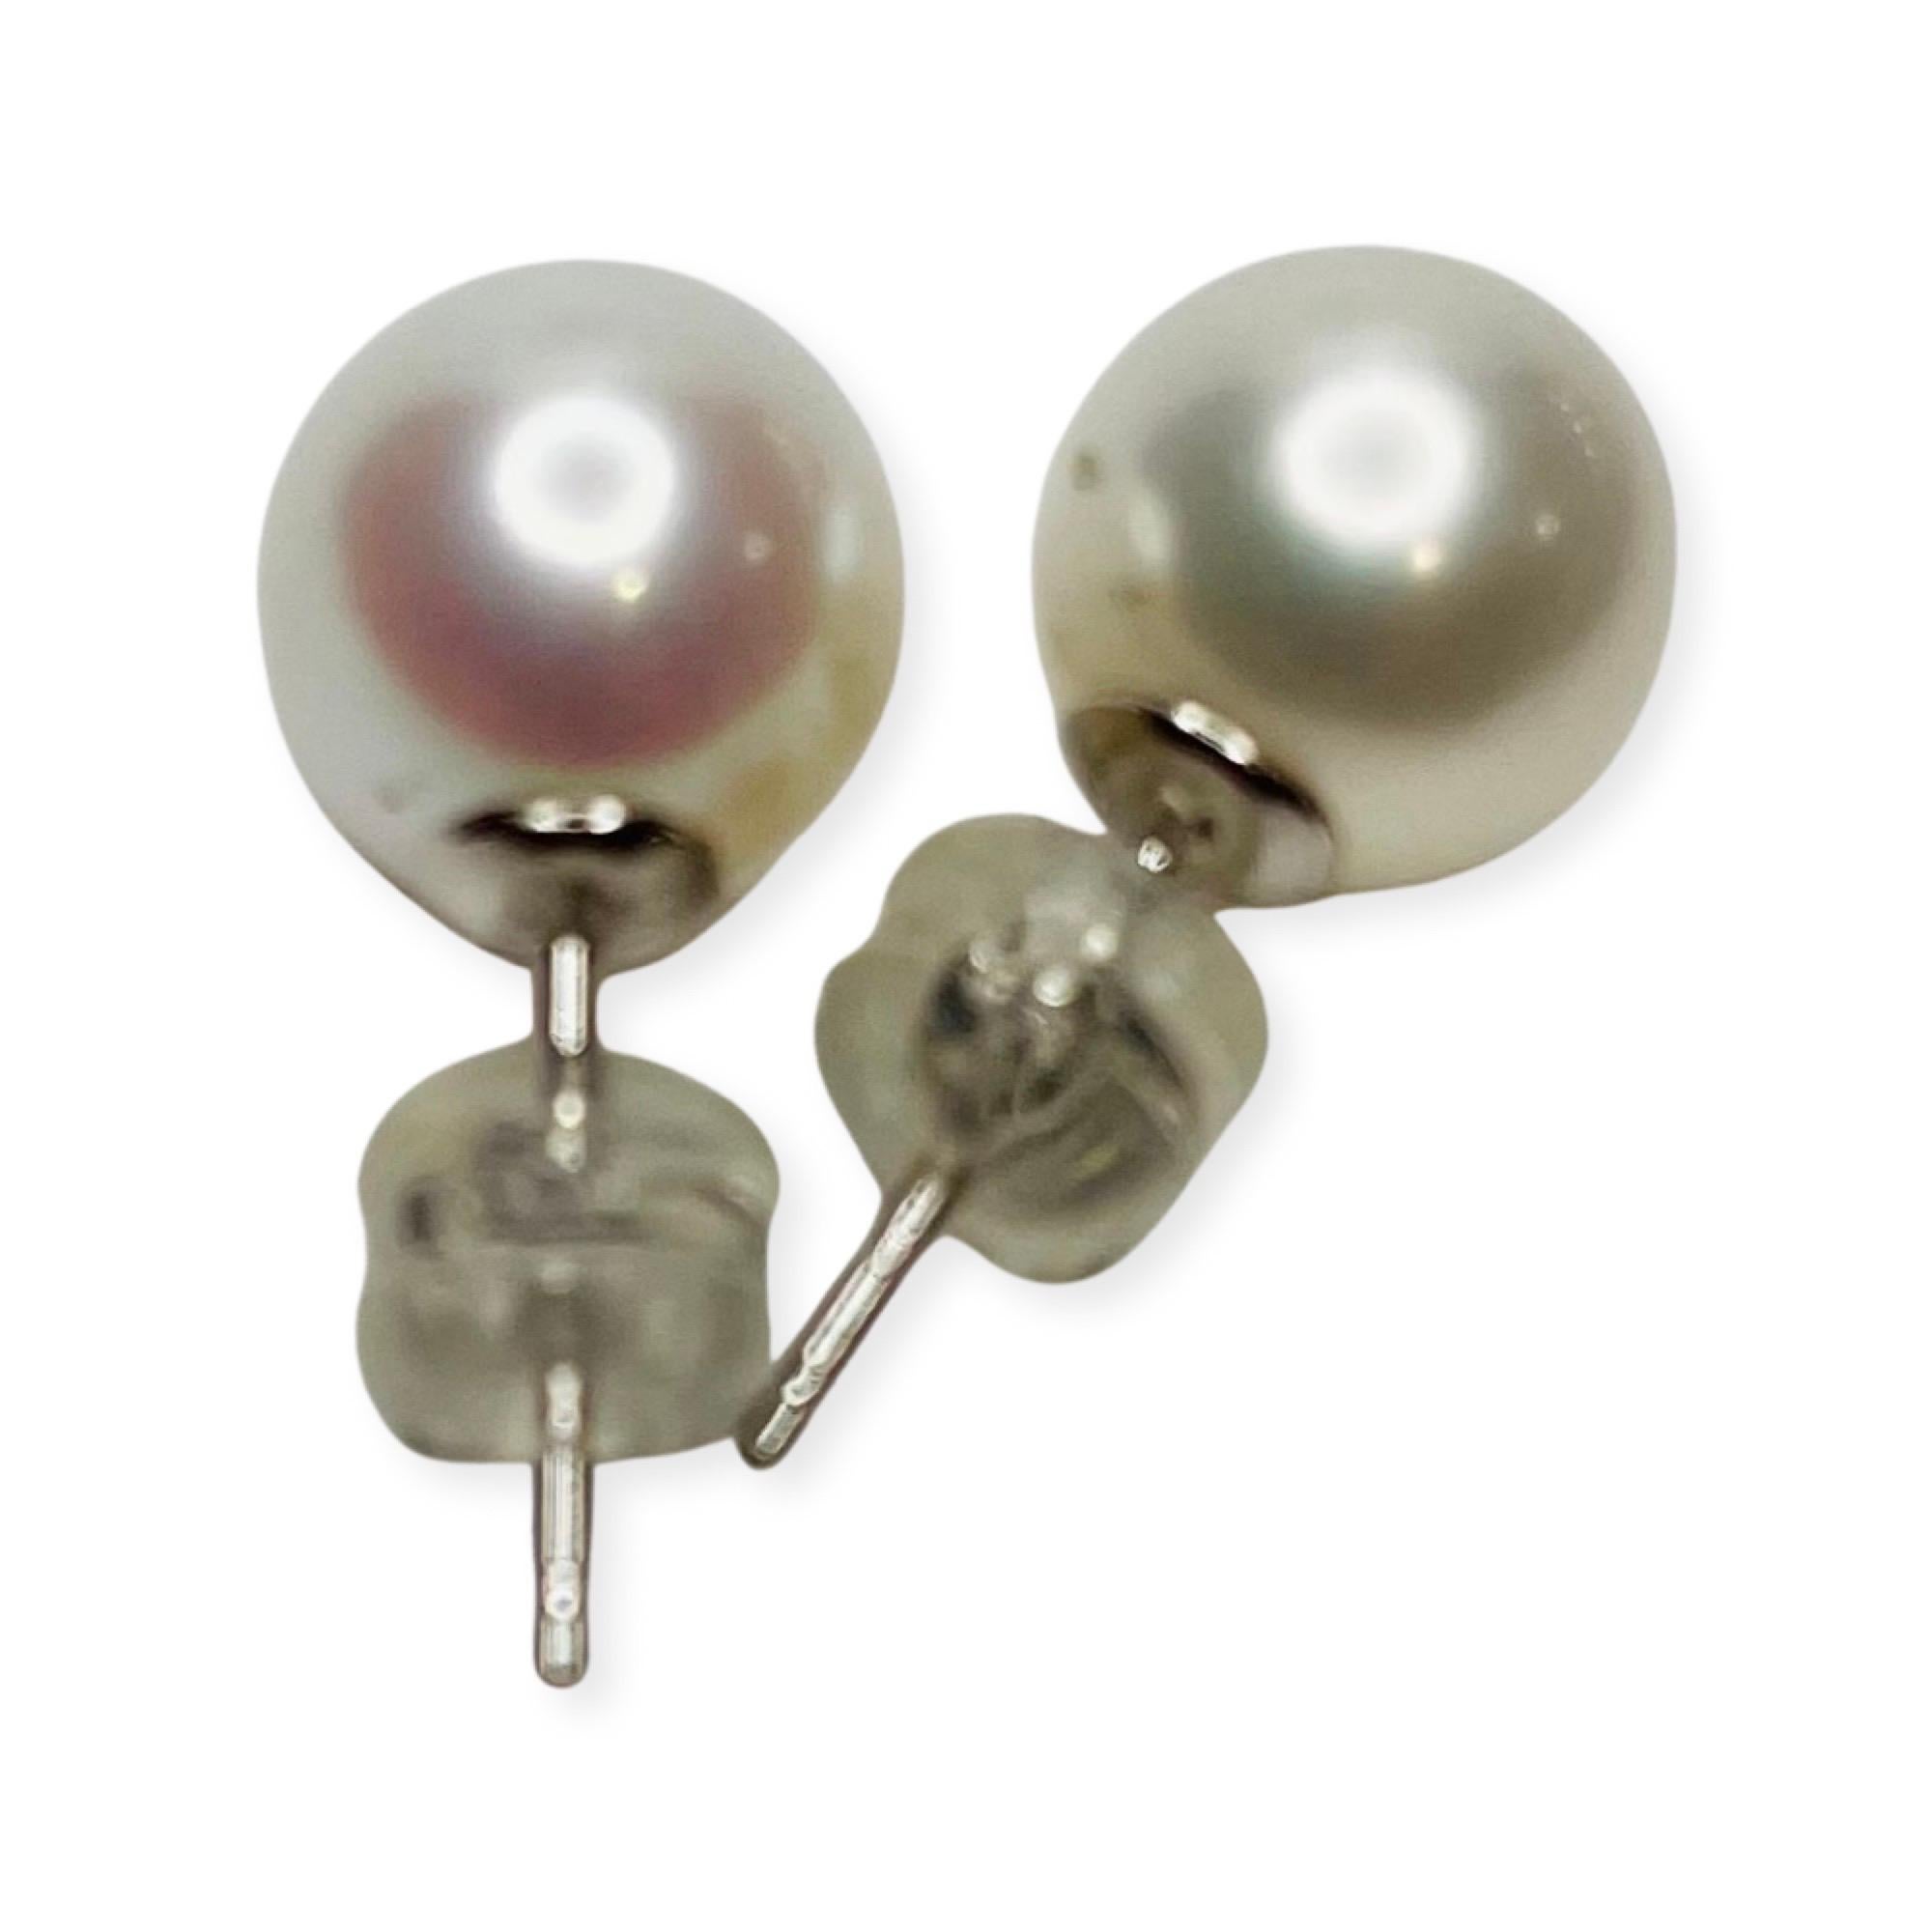 Boucles d'oreilles en or blanc 18 carats avec perles d'eau douce de culture Lithos. Les perles font 8,0-8,5 mm. Elles sont rondes, avec de très légères imperfections et un lustre élevé. Ce sont des boucles d'oreille. Ils ont un dos en or 14KW